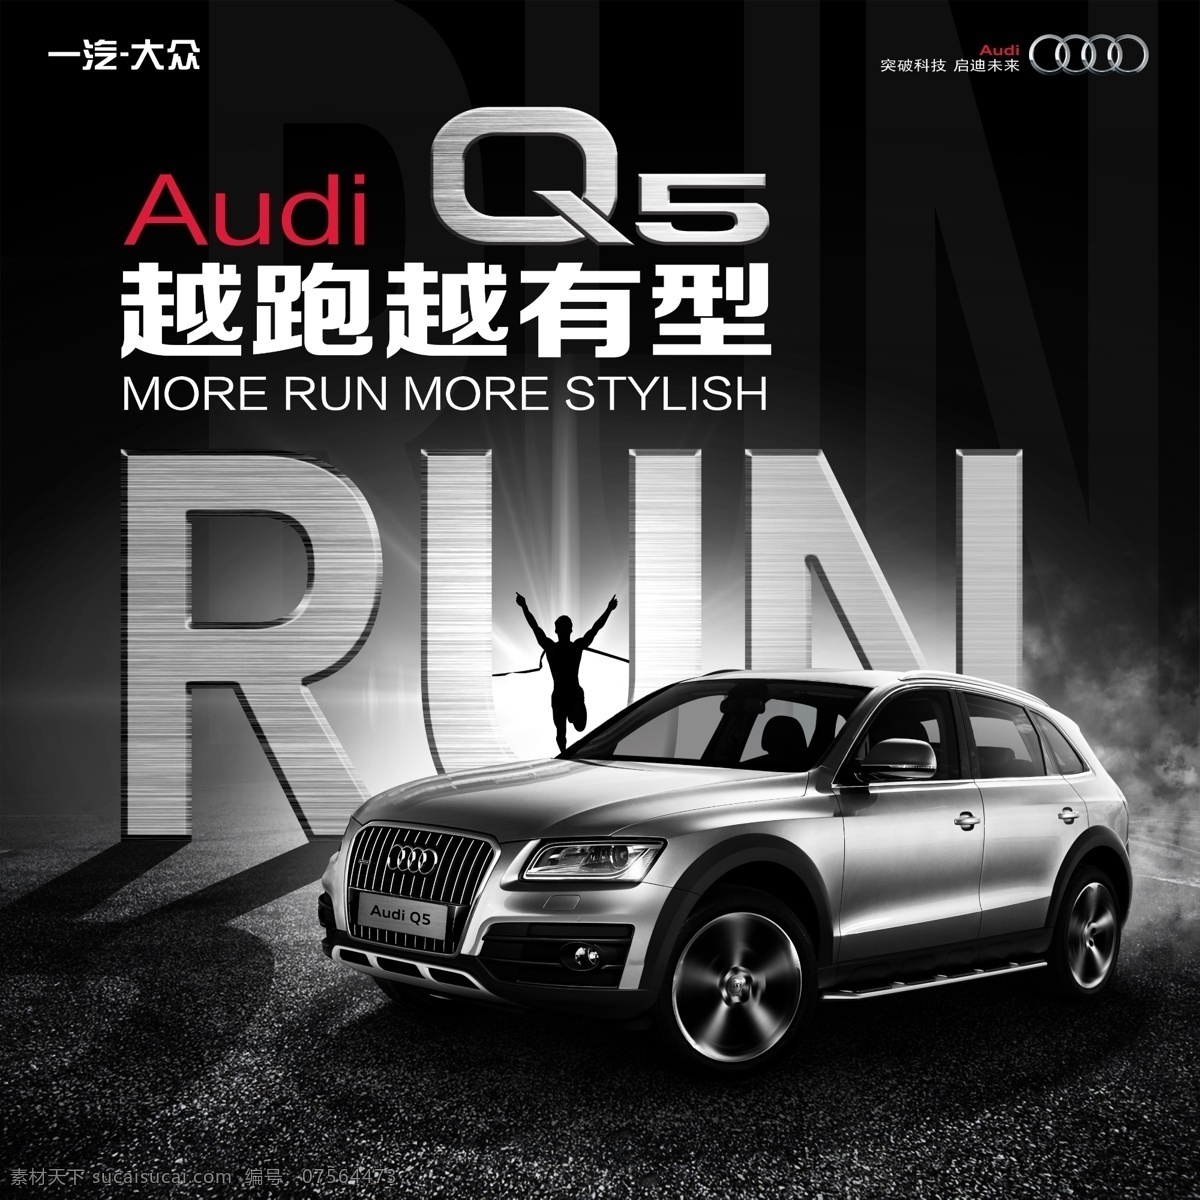 奥迪q5 2015款 2016款 suv 中型 黑色 audi q5 拉网 广告 大图 高清 一汽 奥迪 巨幅 喷绘 汽车